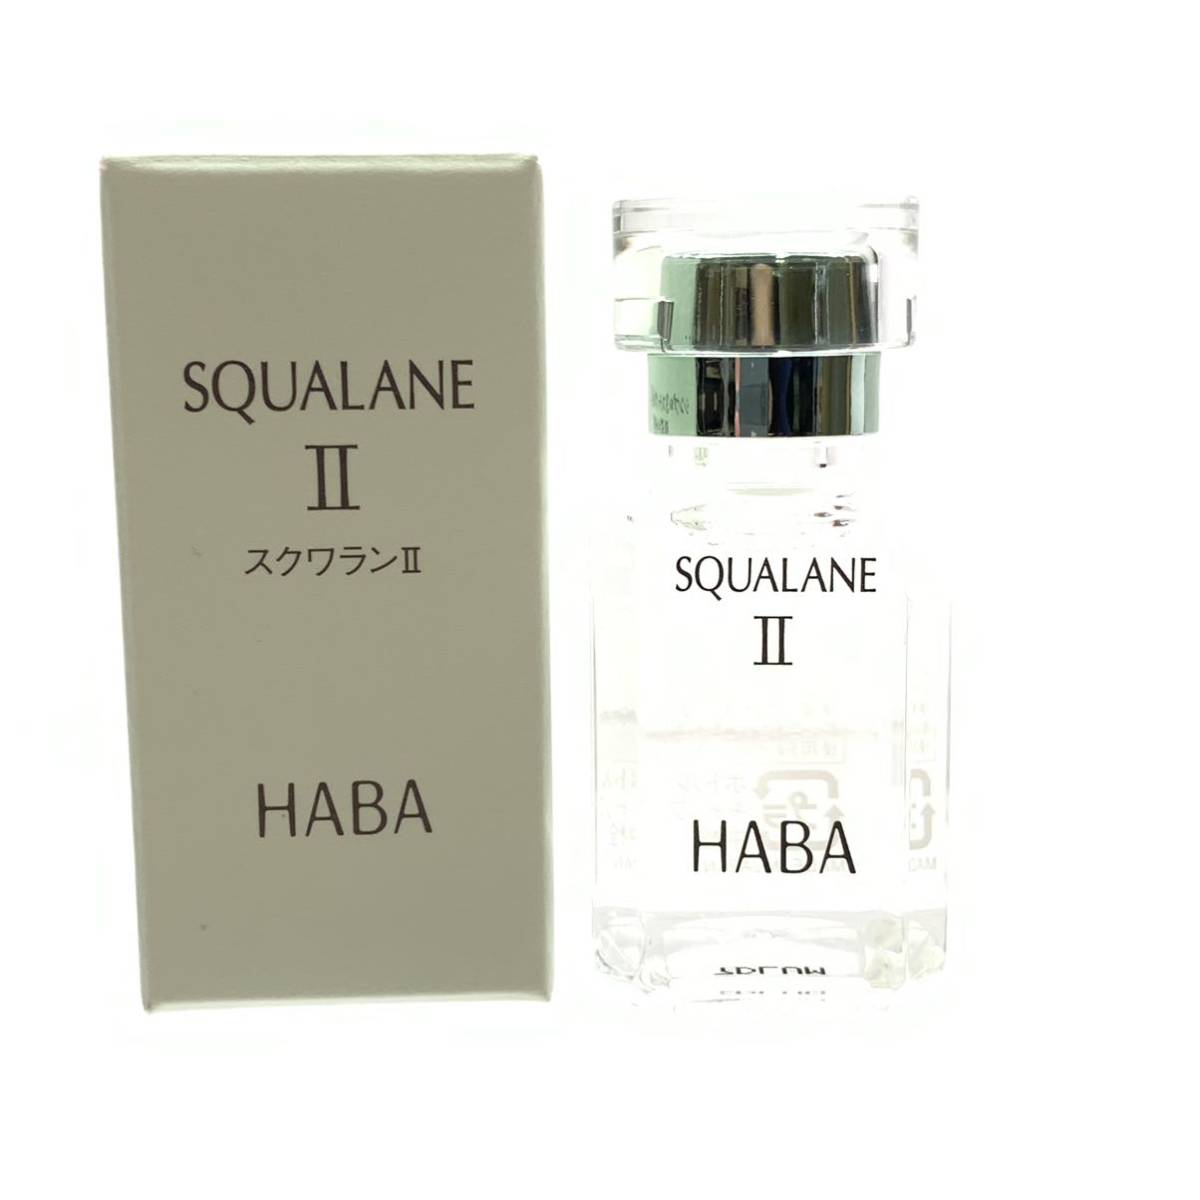 未使用 HABA ハーバー スクワランⅡ 15ml 日本製 MADE IN JAPAN 化粧オイル 化粧品 コスメ スキンケア 基礎化粧品 管理RY23004316の画像1